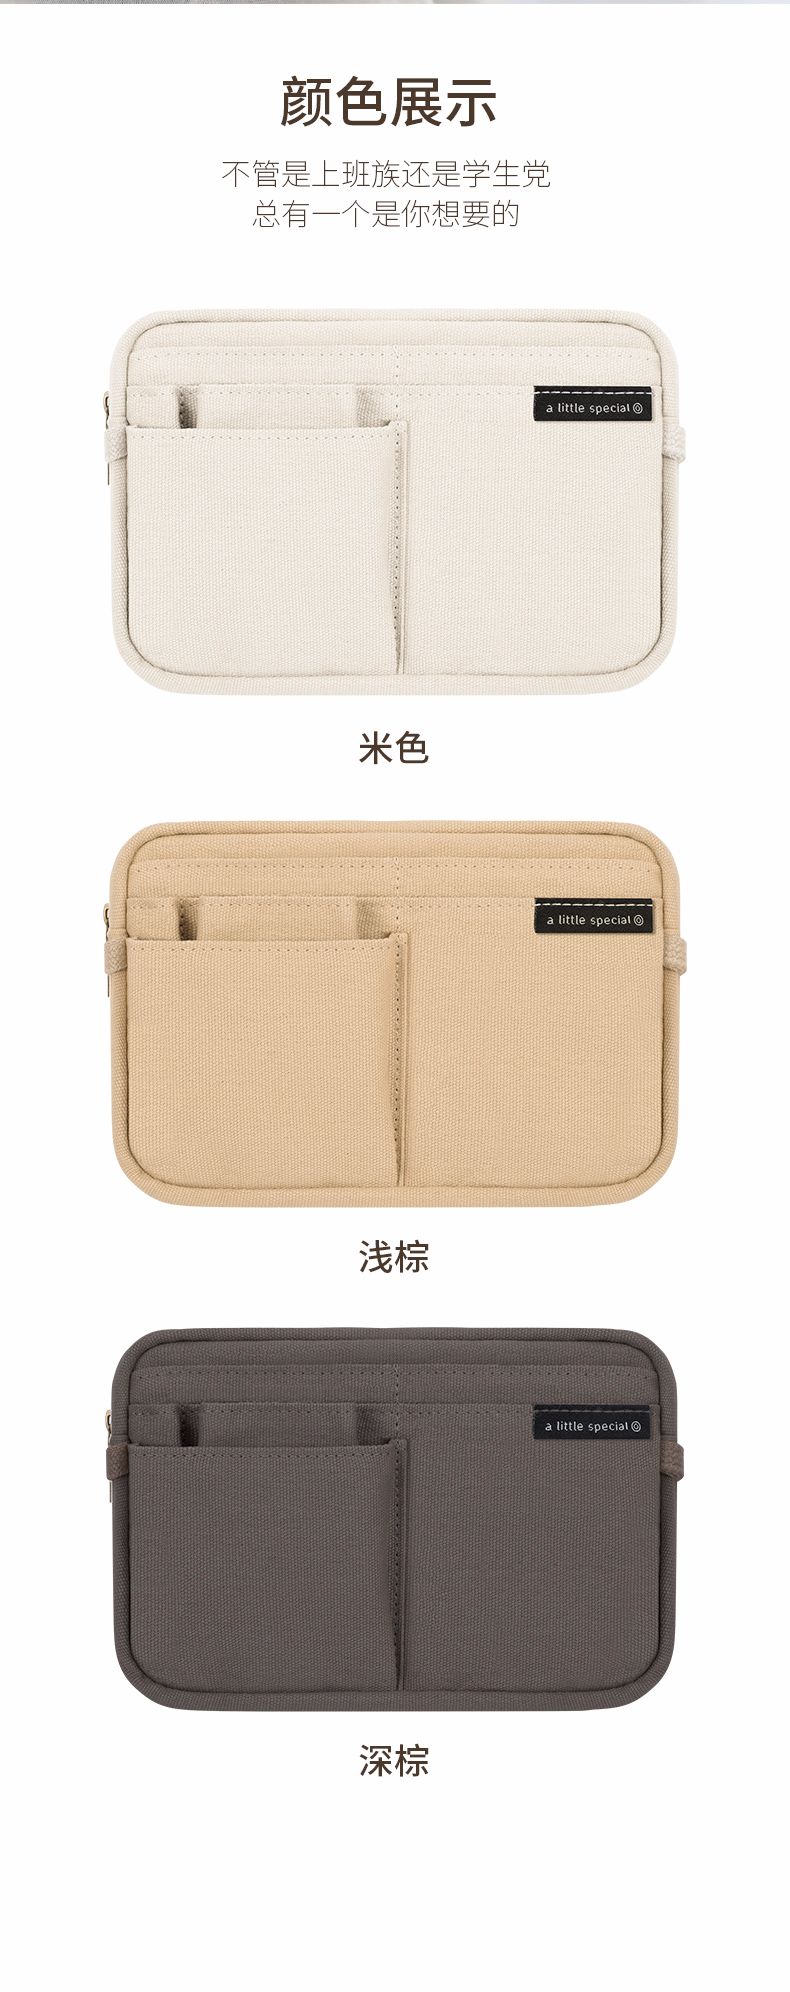 KOKUYO/国誉BBS01文具收纳一米新纯笔袋 深棕色详情图3